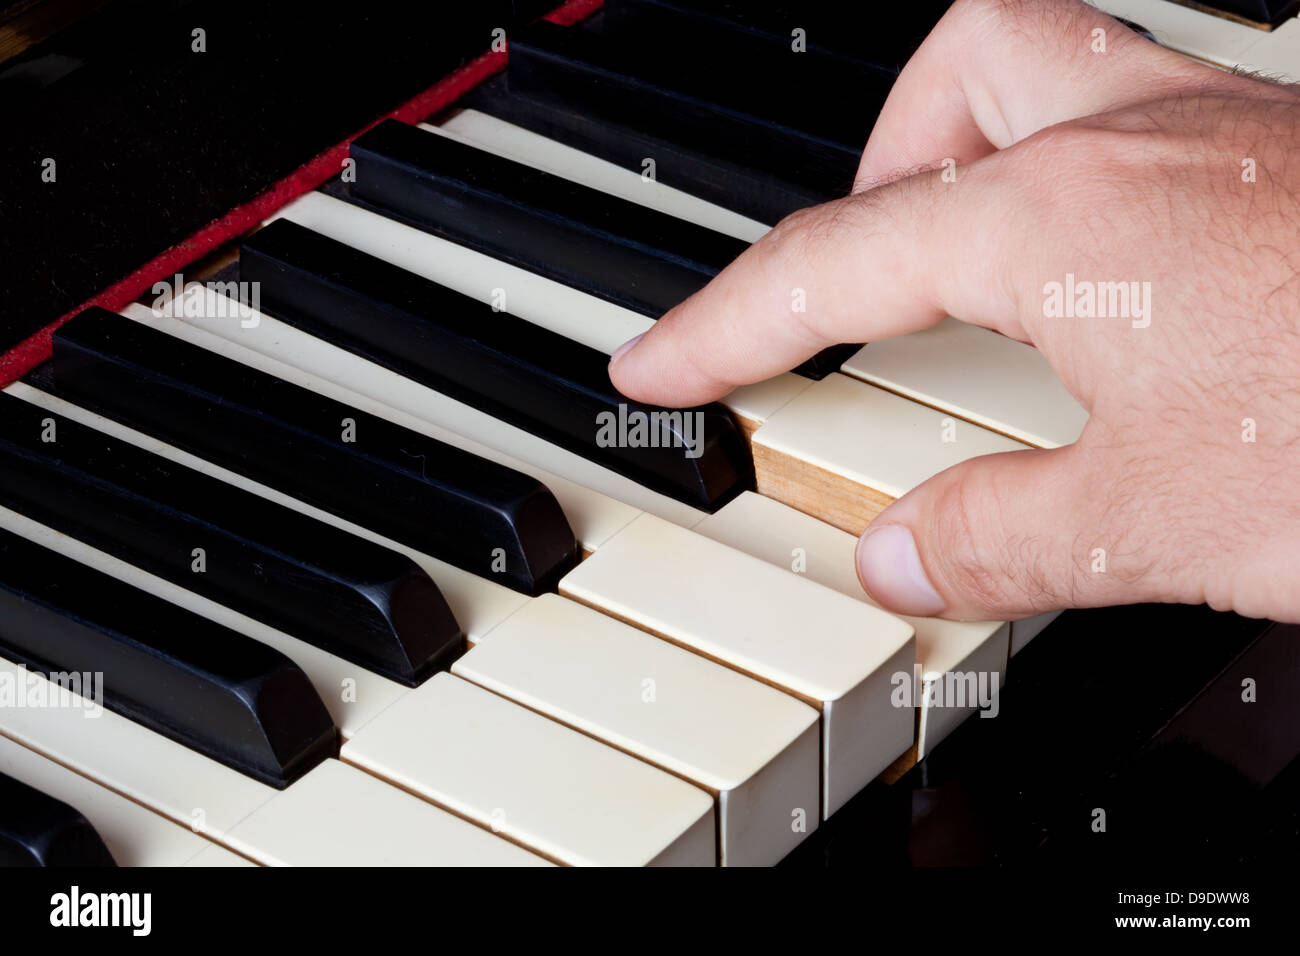 Tastiera di pianoforte fatta di avorio con le mani. Foto Stock